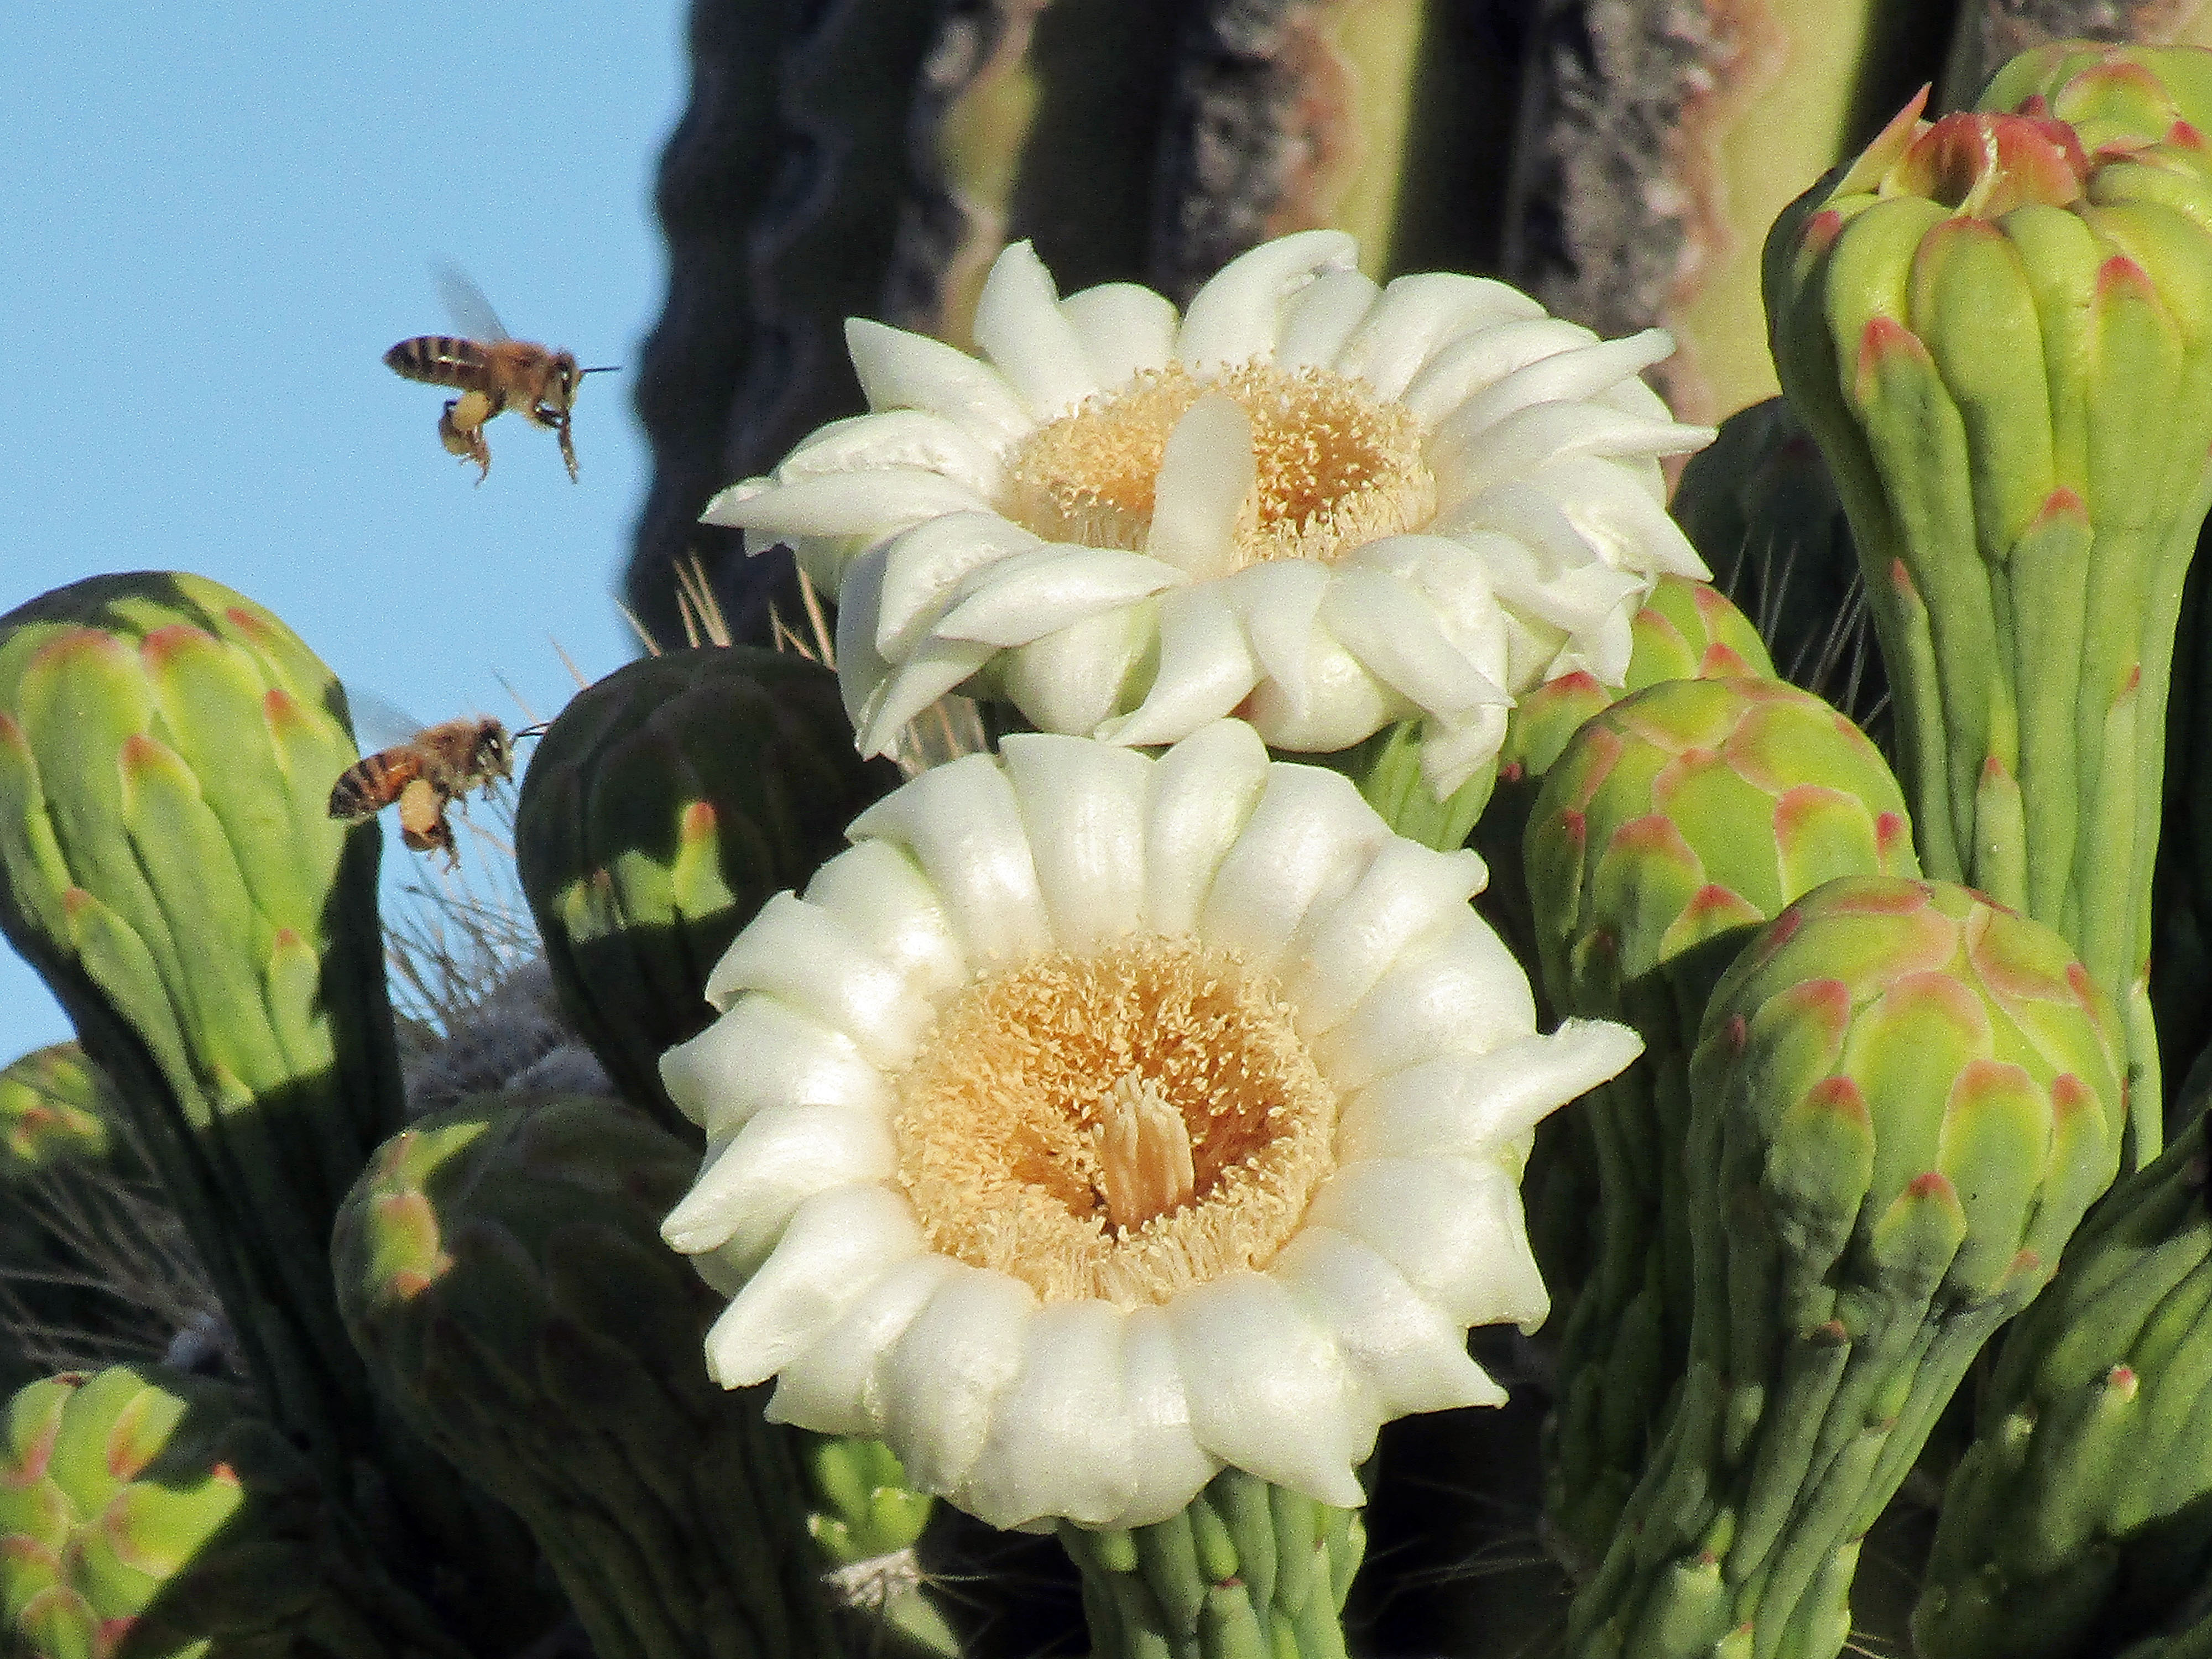 Saguaro cactus blossoms          